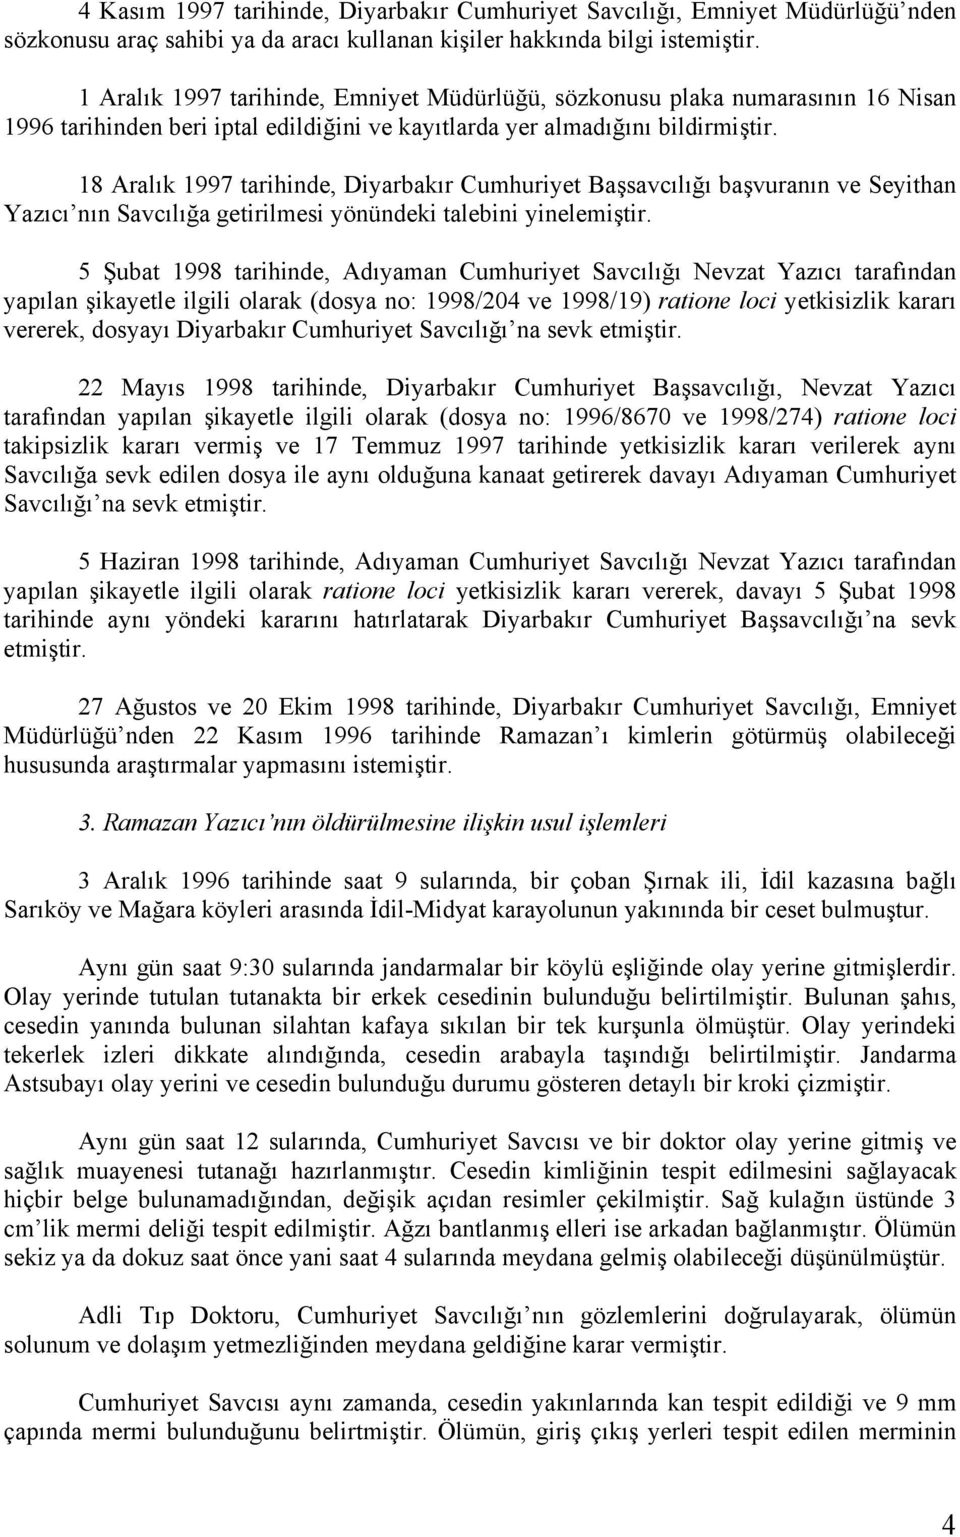 18 Aralık 1997 tarihinde, Diyarbakır Cumhuriyet Başsavcılığı başvuranın ve Seyithan Yazıcı nın Savcılığa getirilmesi yönündeki talebini yinelemiştir.